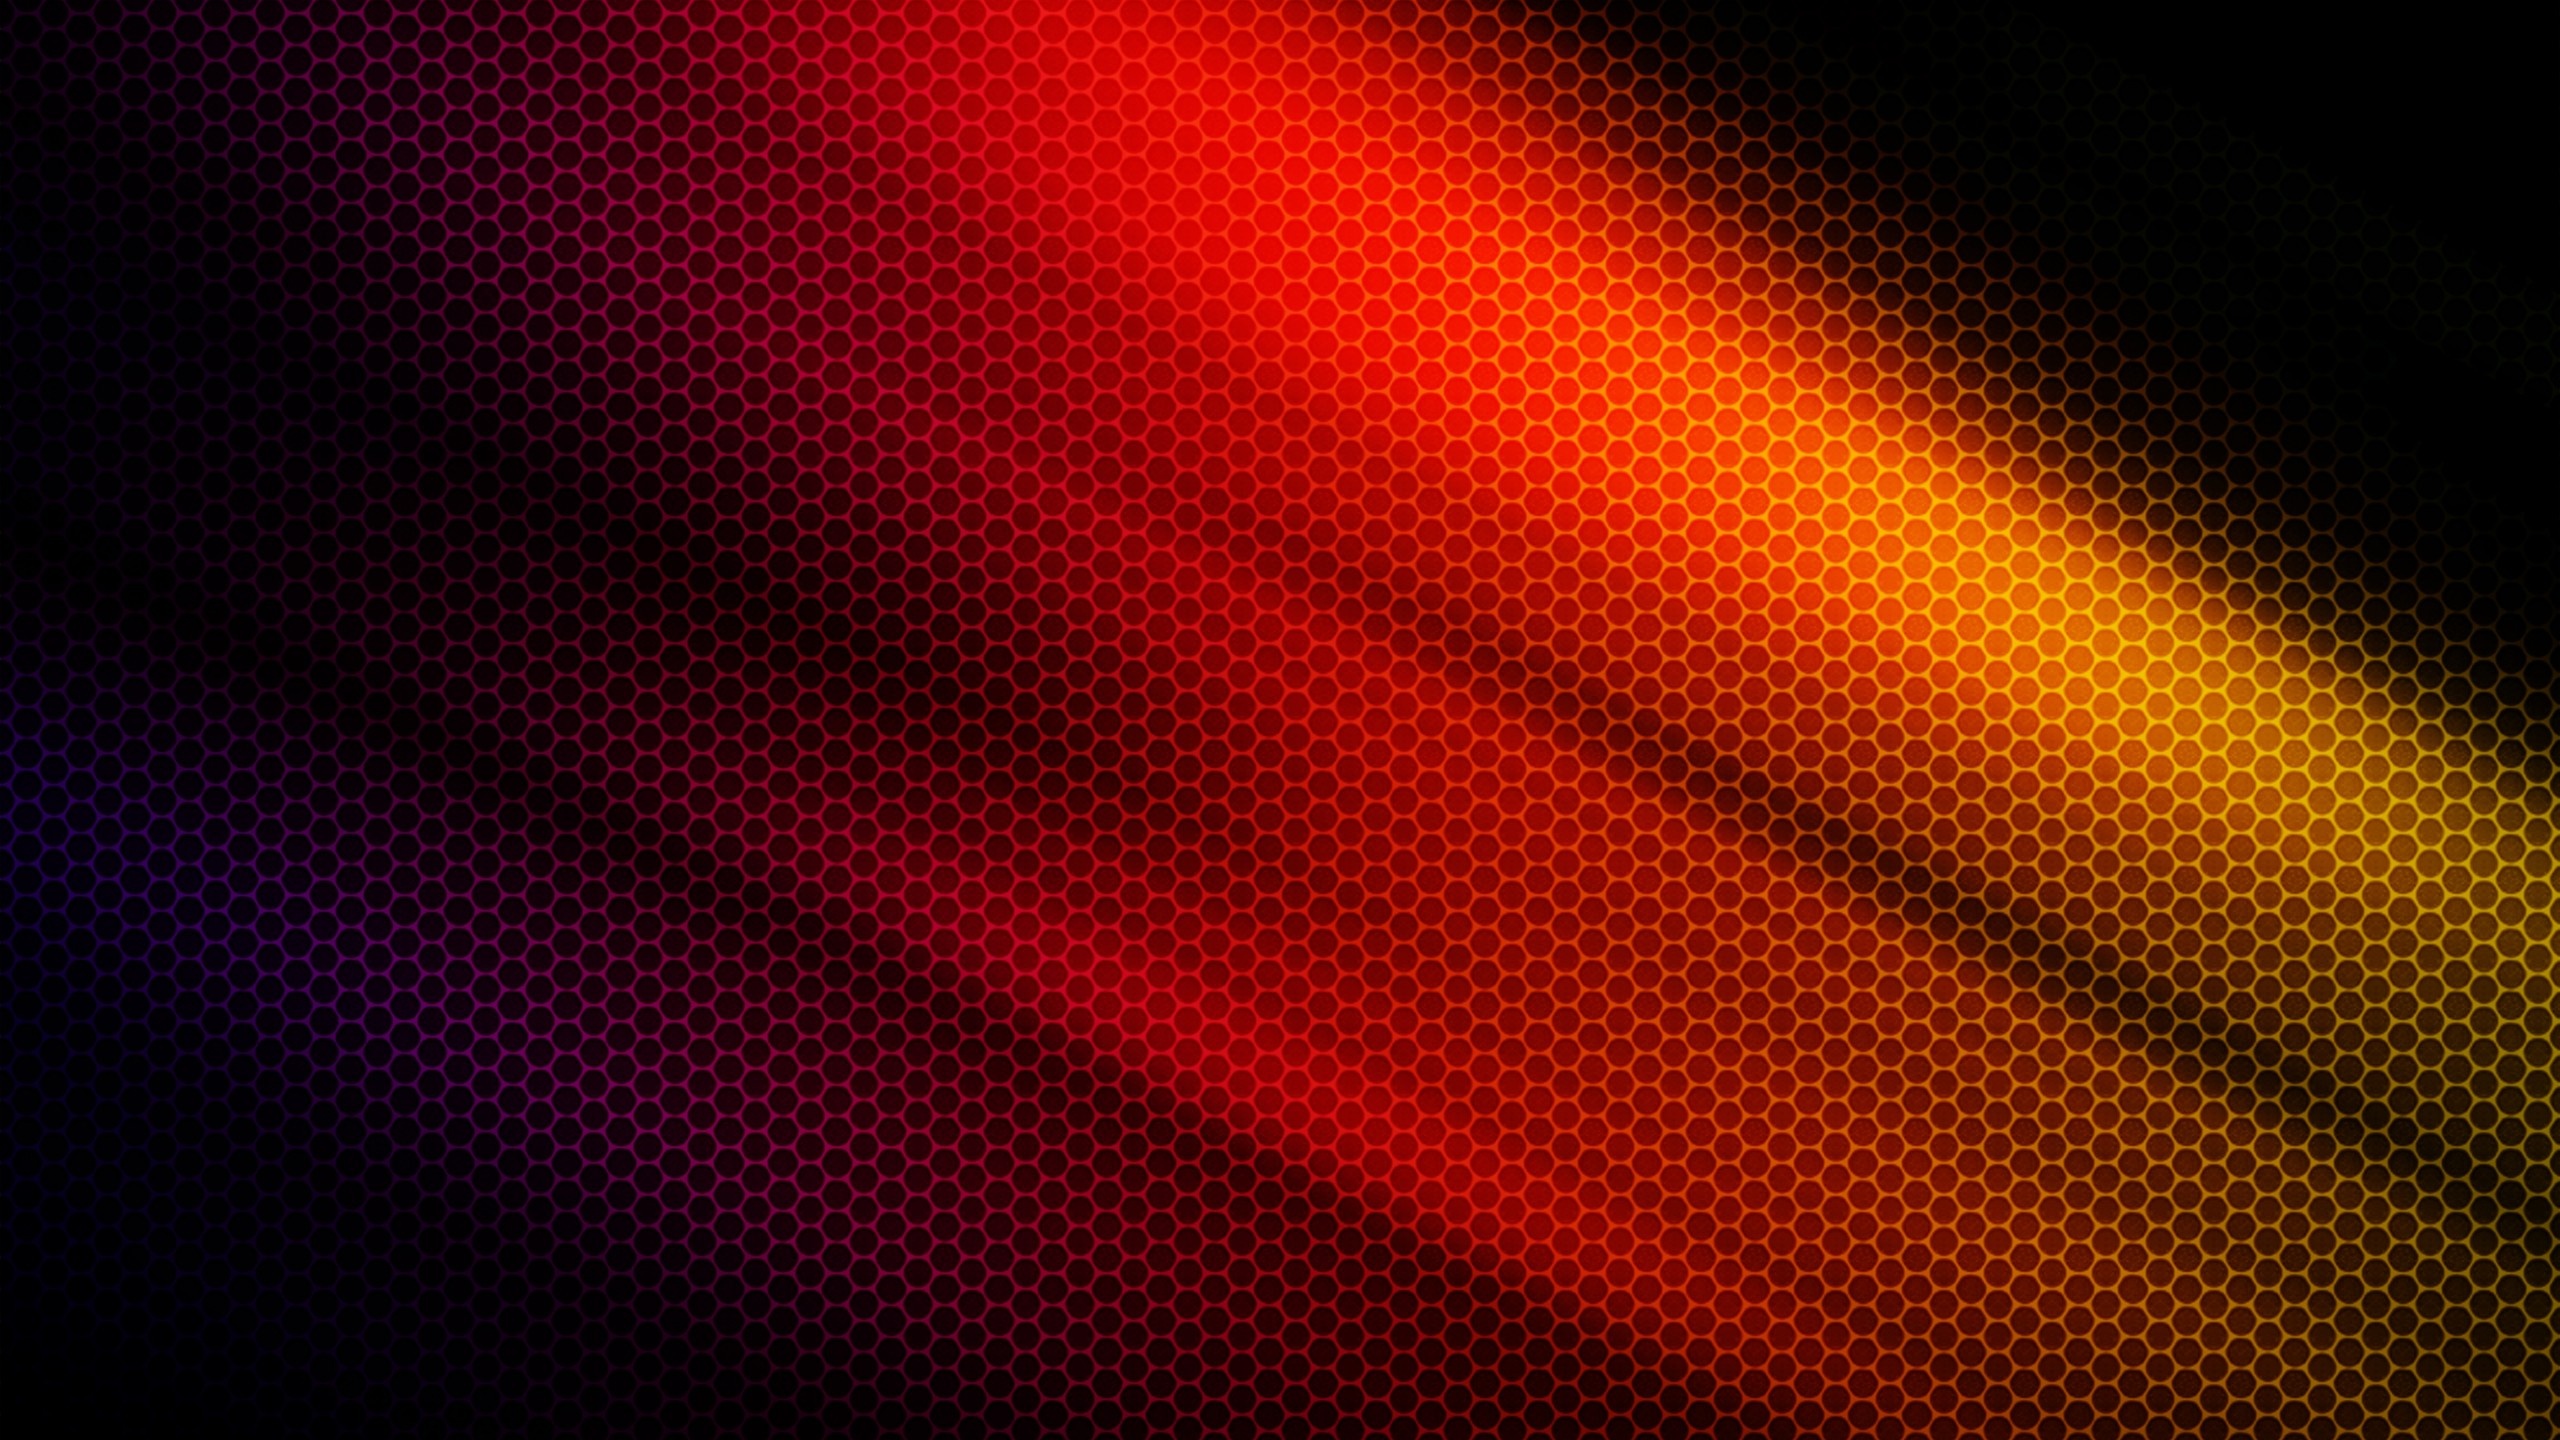 Hexagonal Wallpaper Pattern Mac